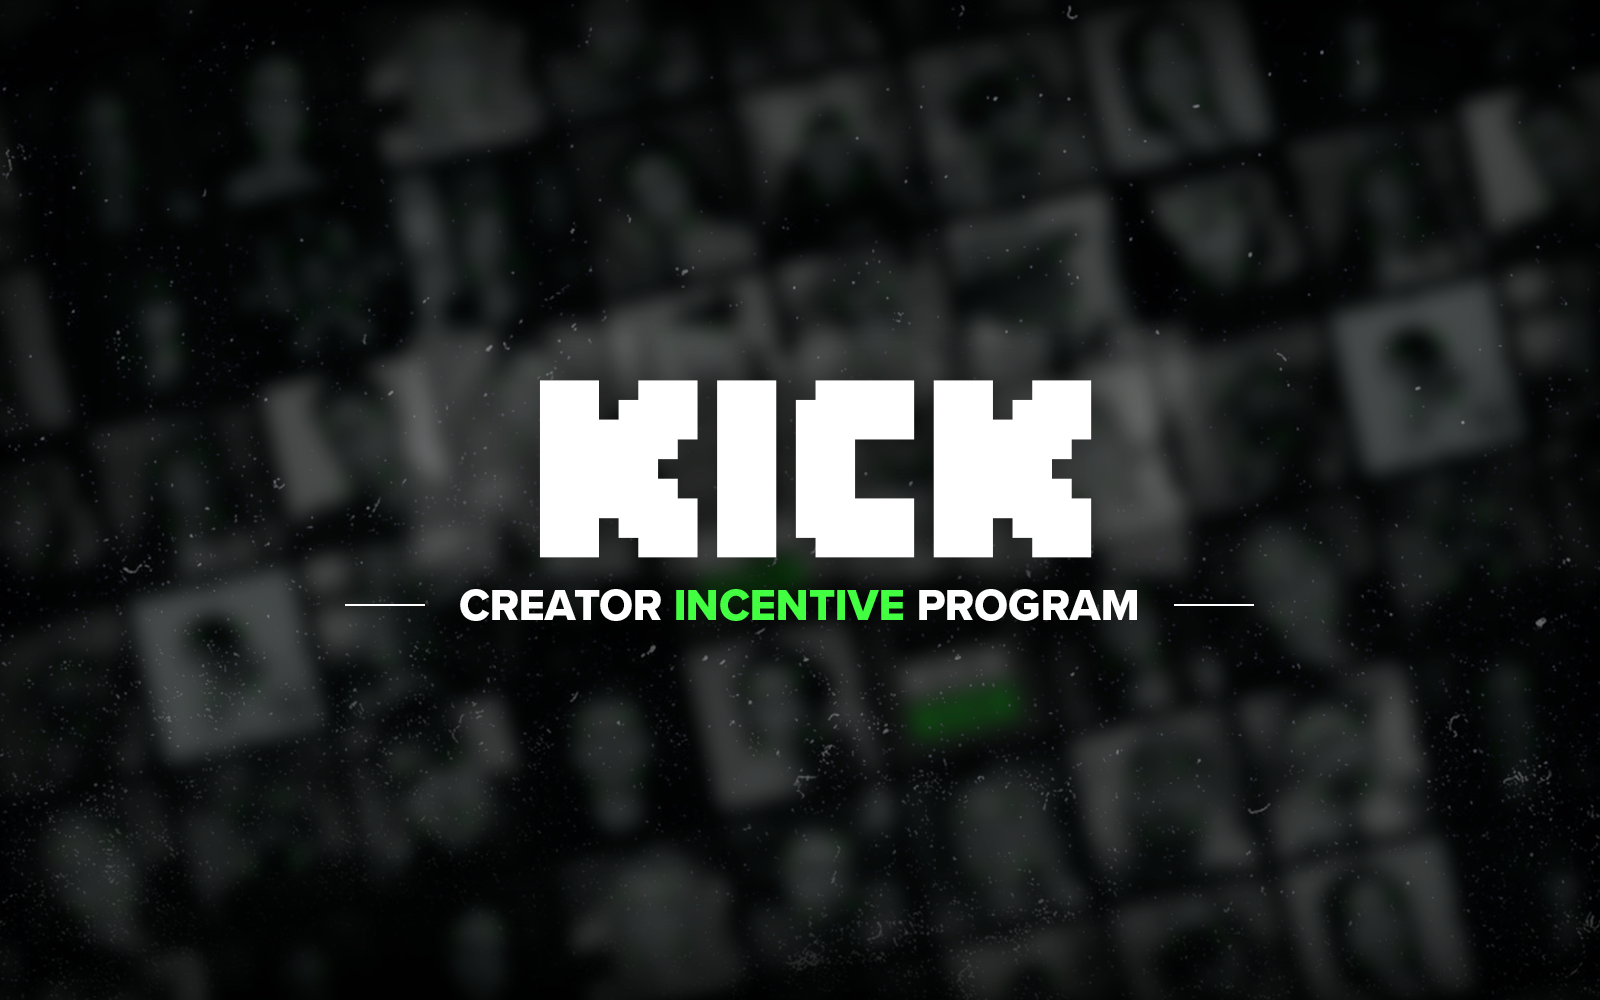 Kick Creator Incentive Program Español